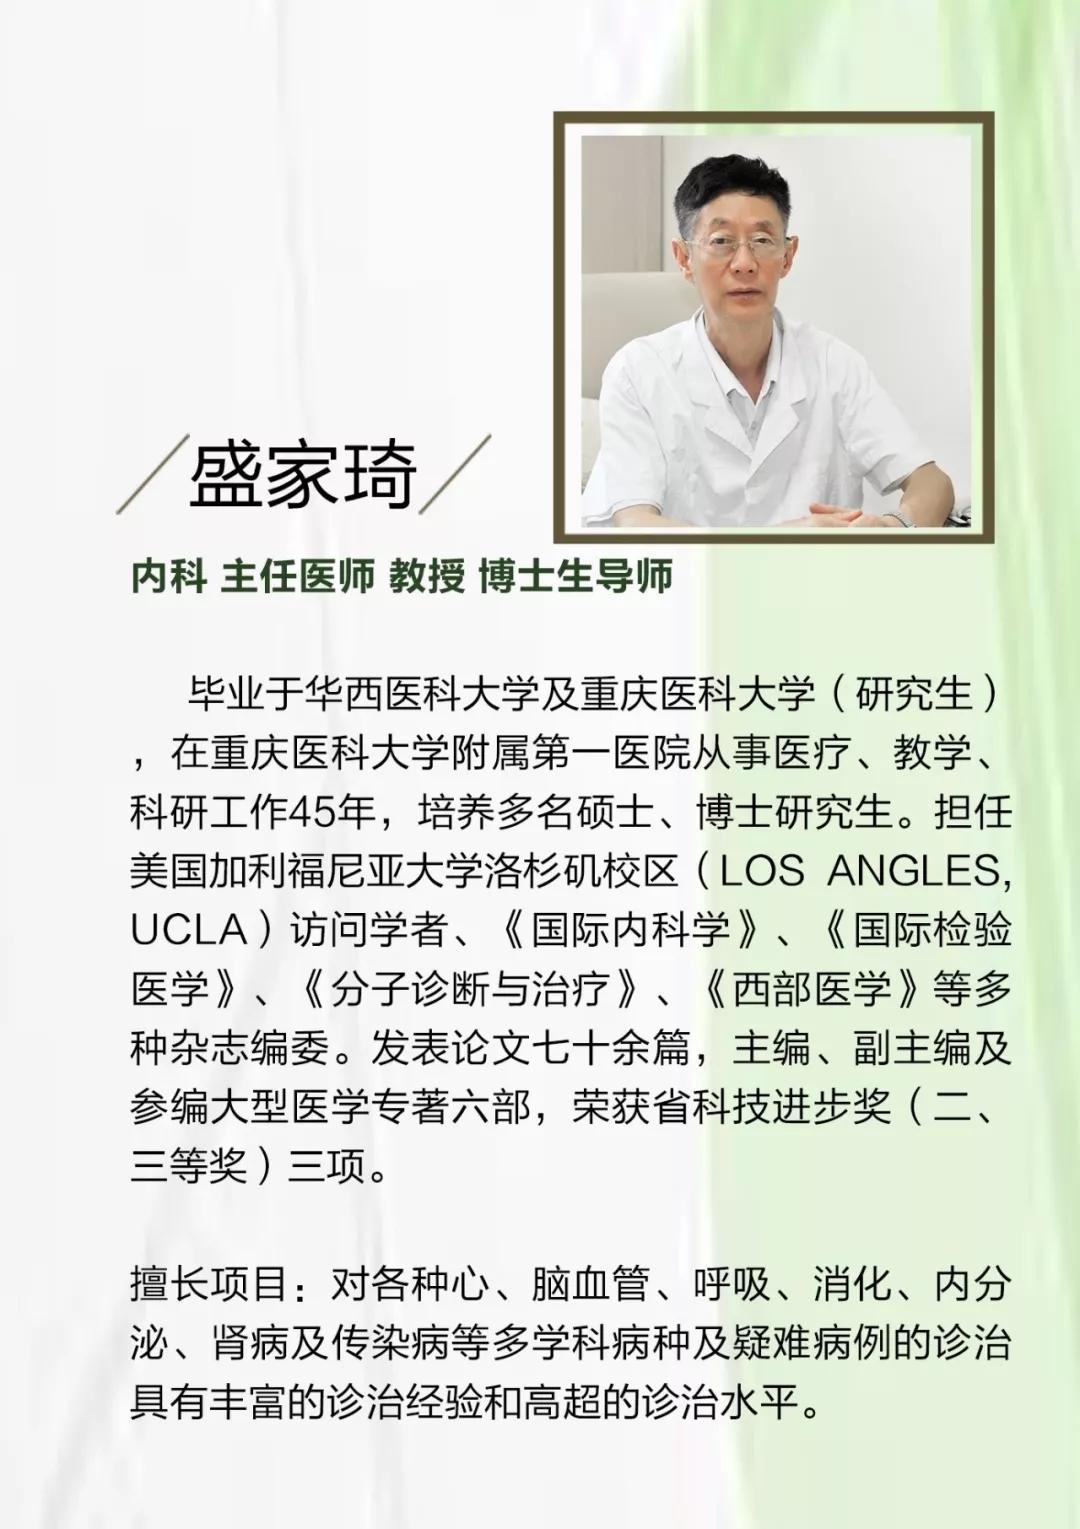 重庆五洲妇儿医院医生获颁总工会“爱心医生”荣誉称号